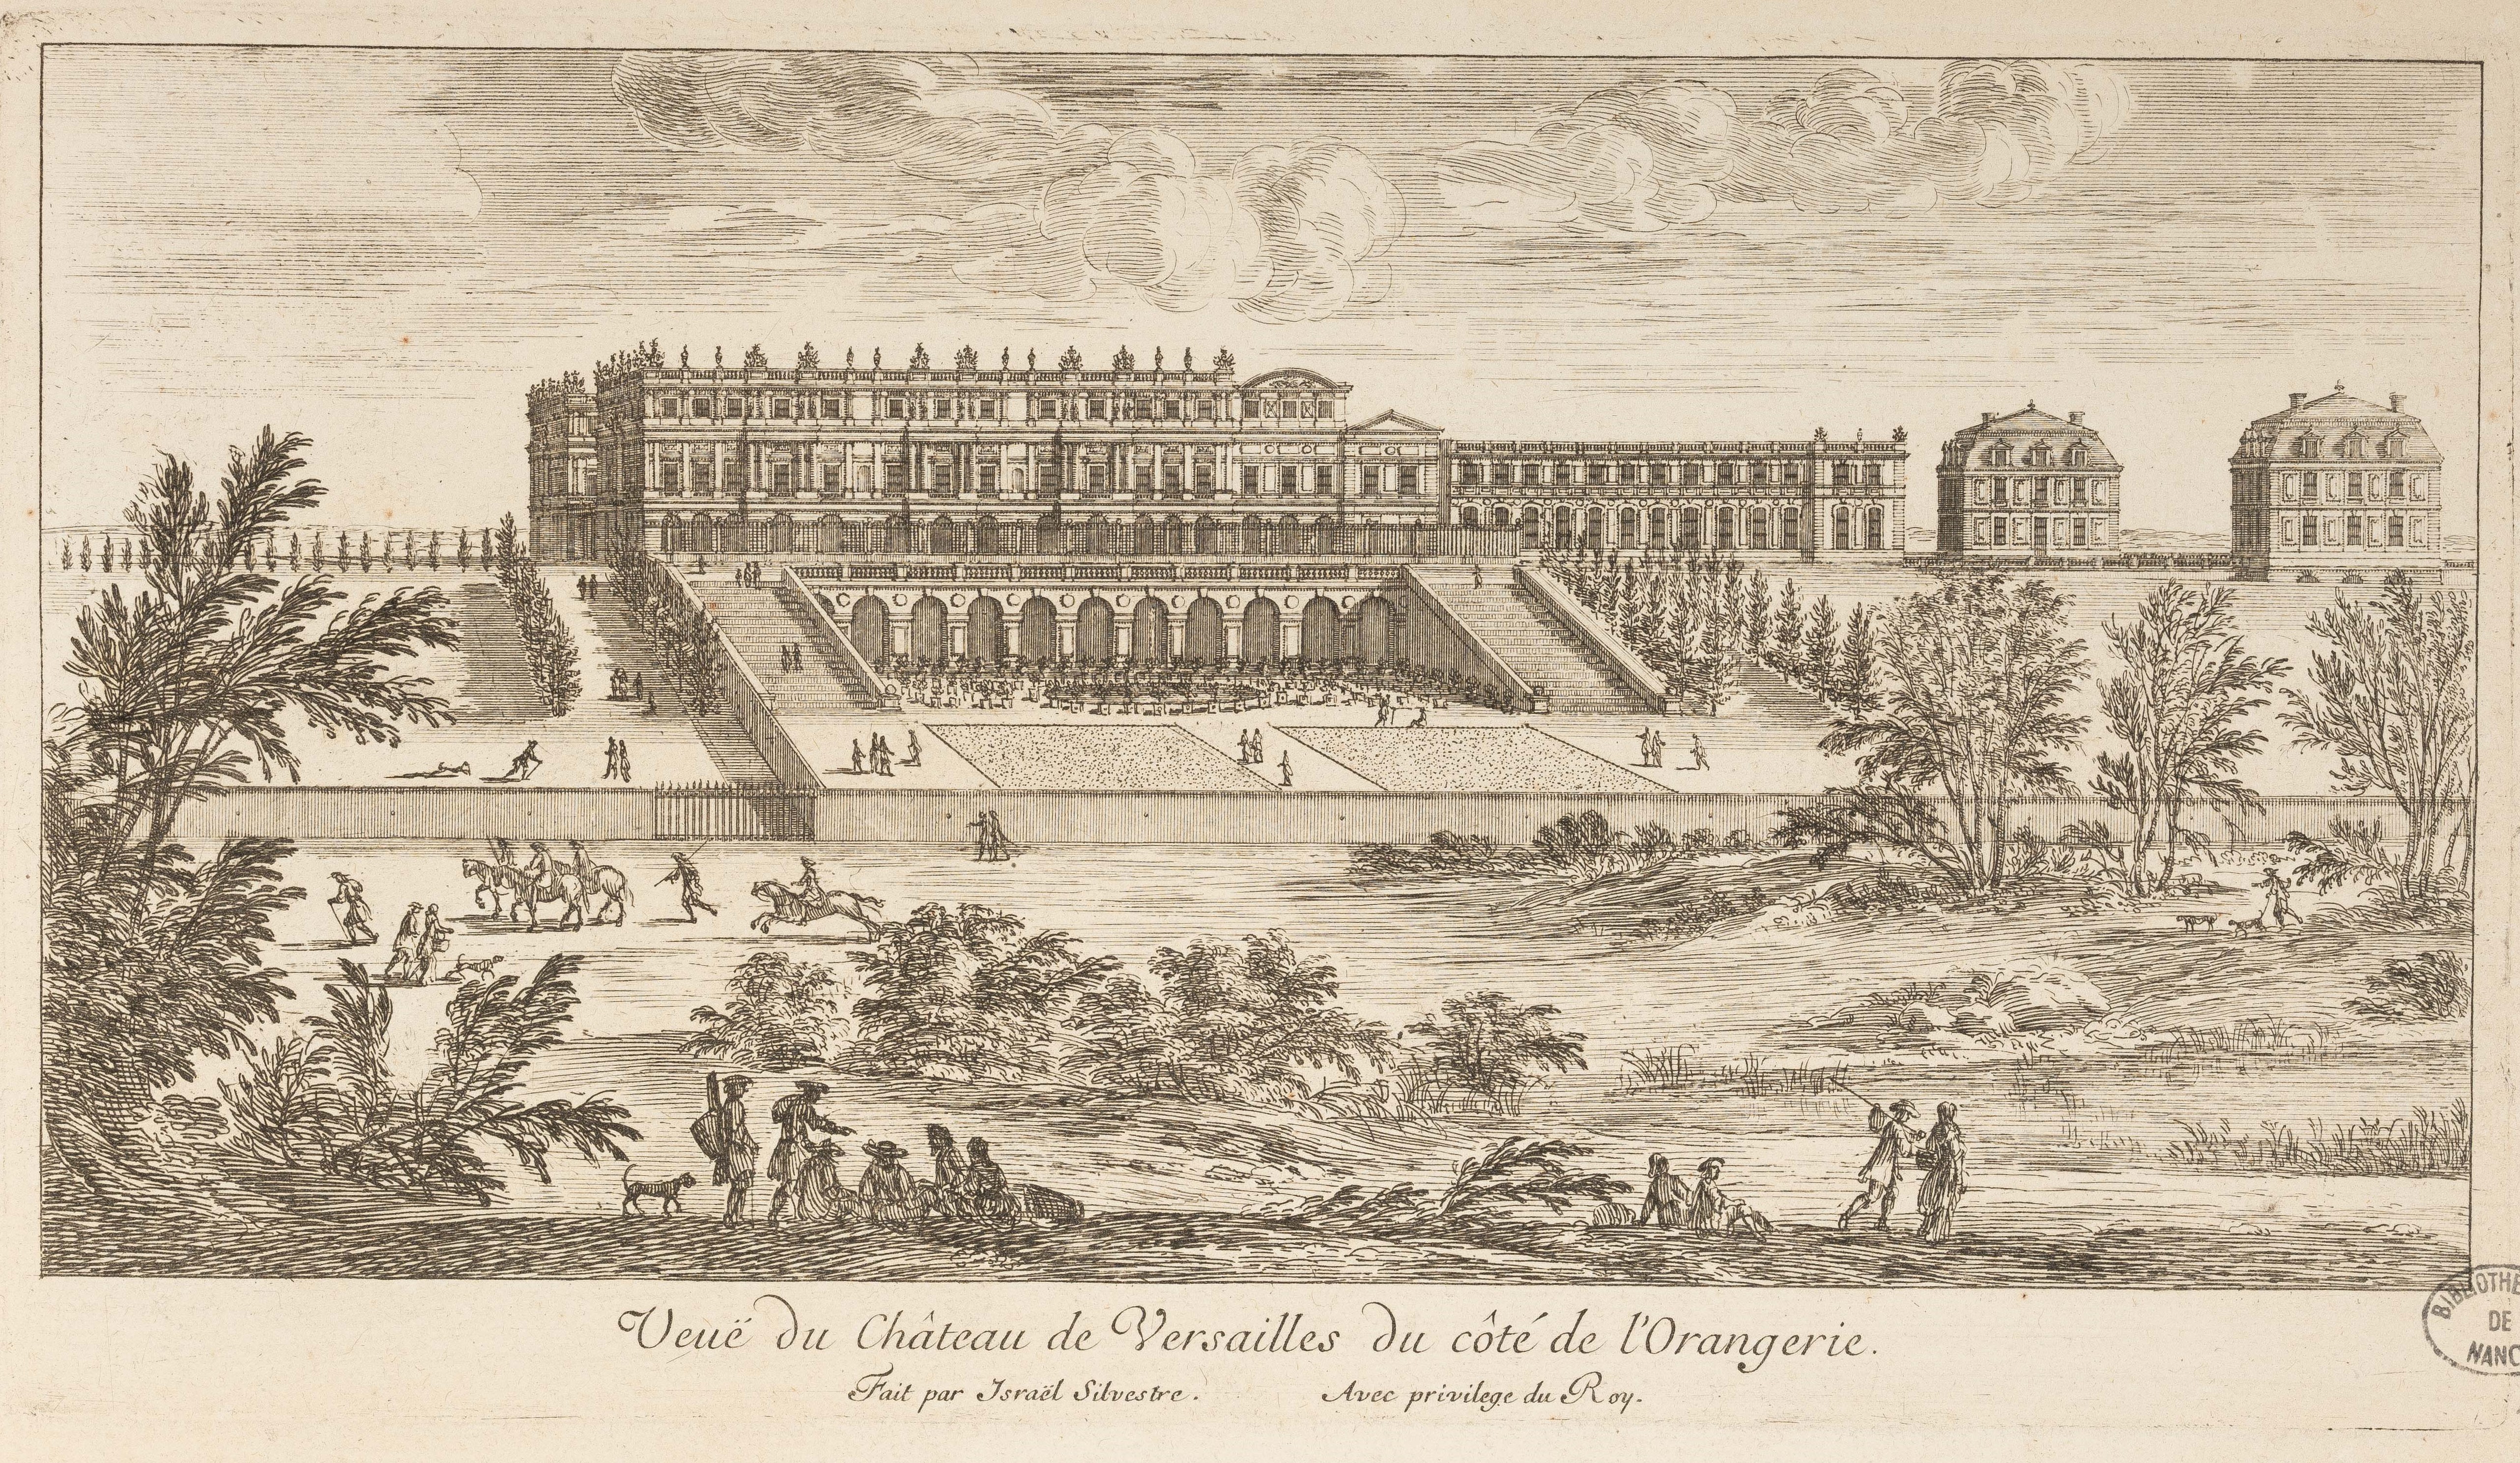 Israël Silvestre : Vüe du Château de Versailles du coté de l'Orangerie